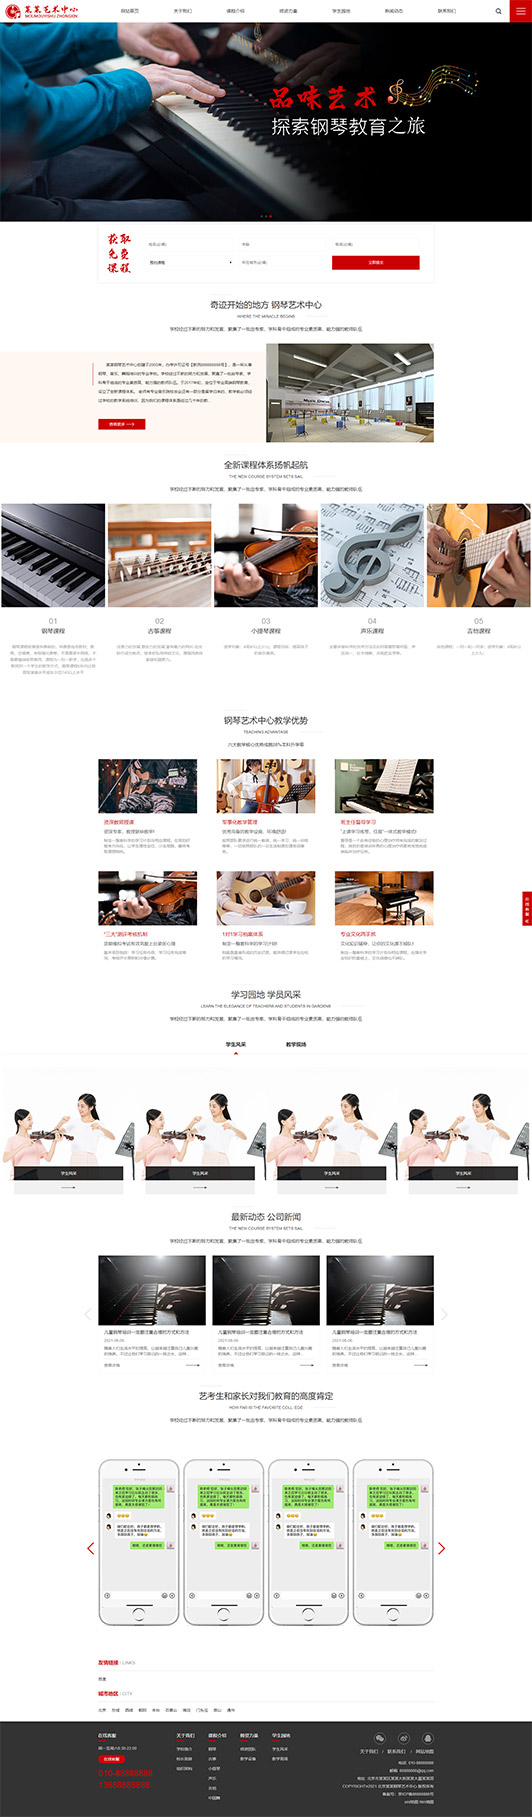 吉安钢琴艺术培训公司响应式企业网站